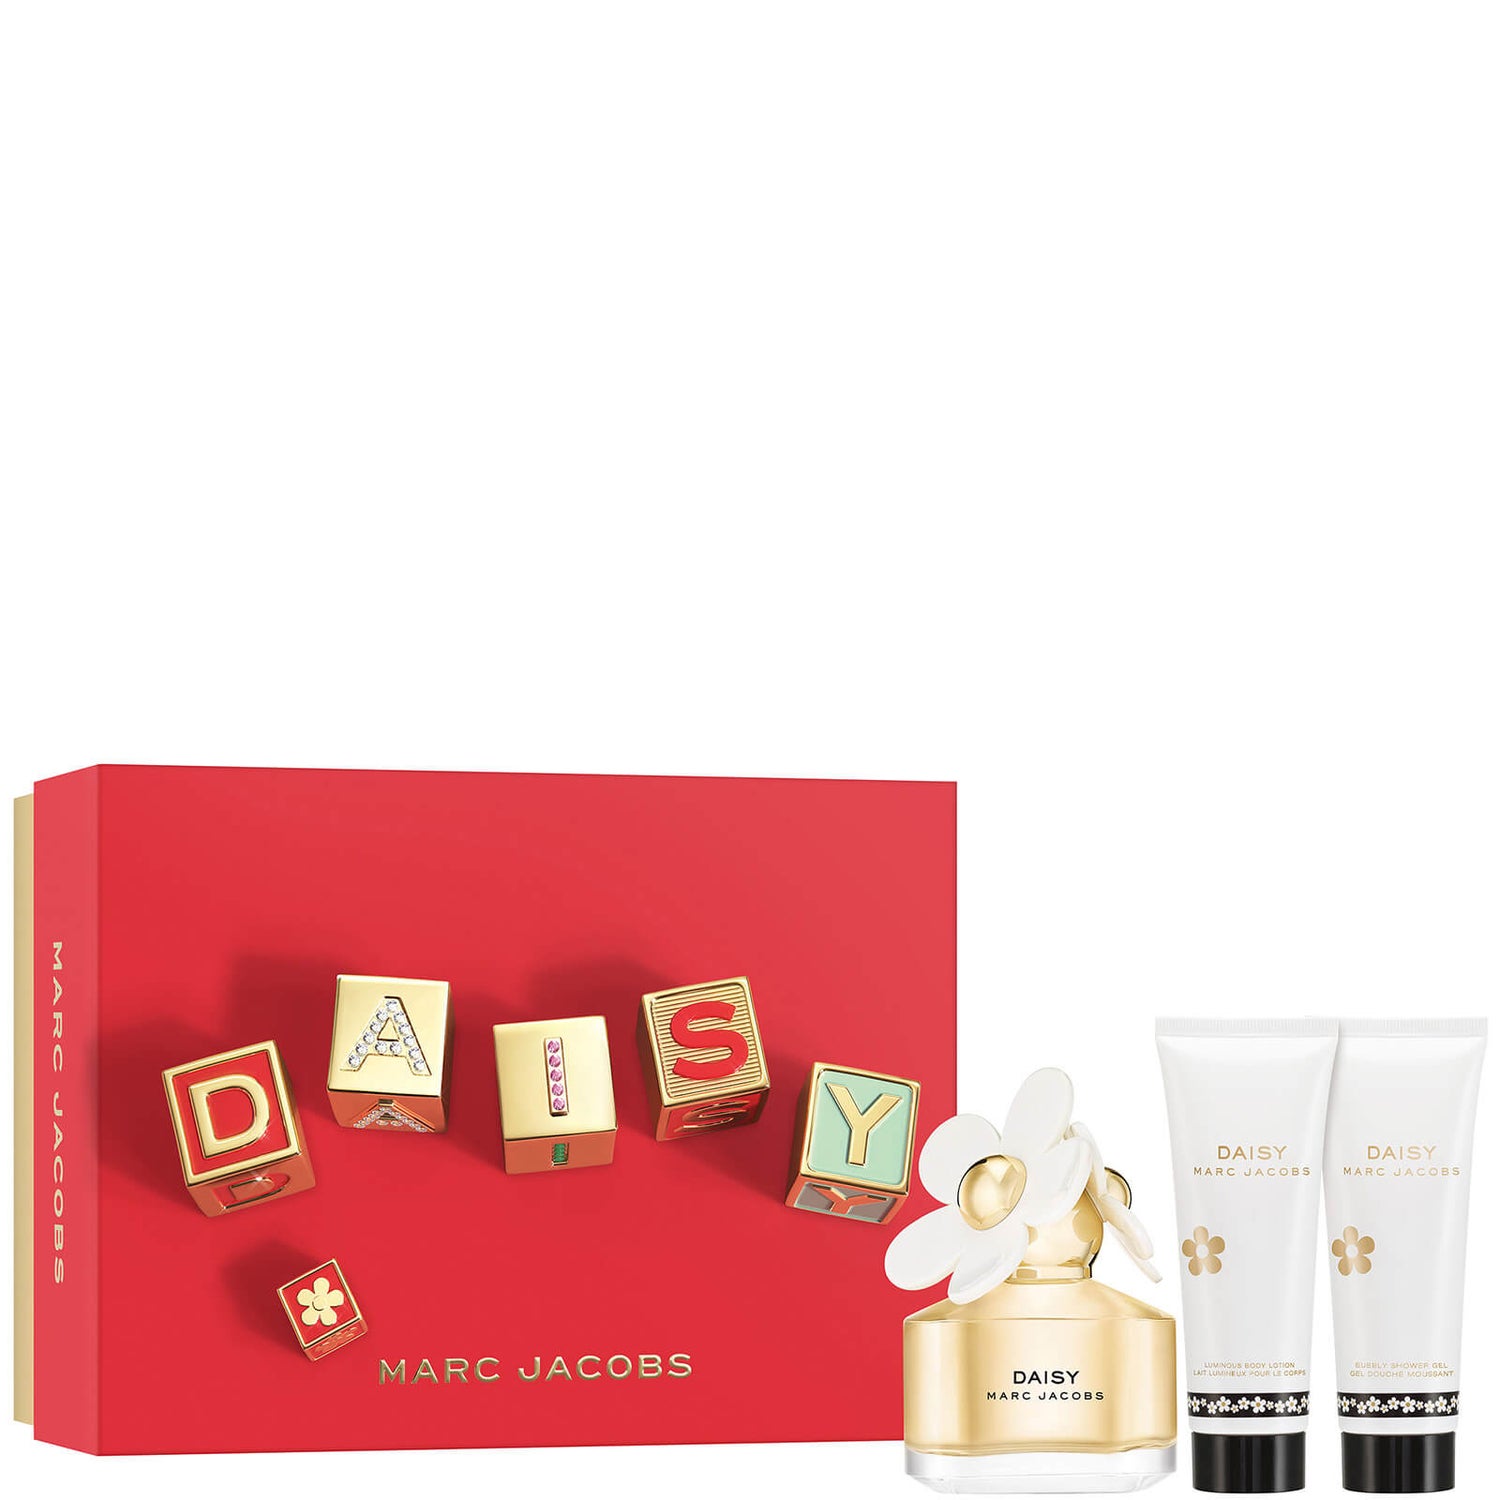 Marc Jacobs Daisy Eau de Toilette 50ml Gift Set (Worth £94.00)